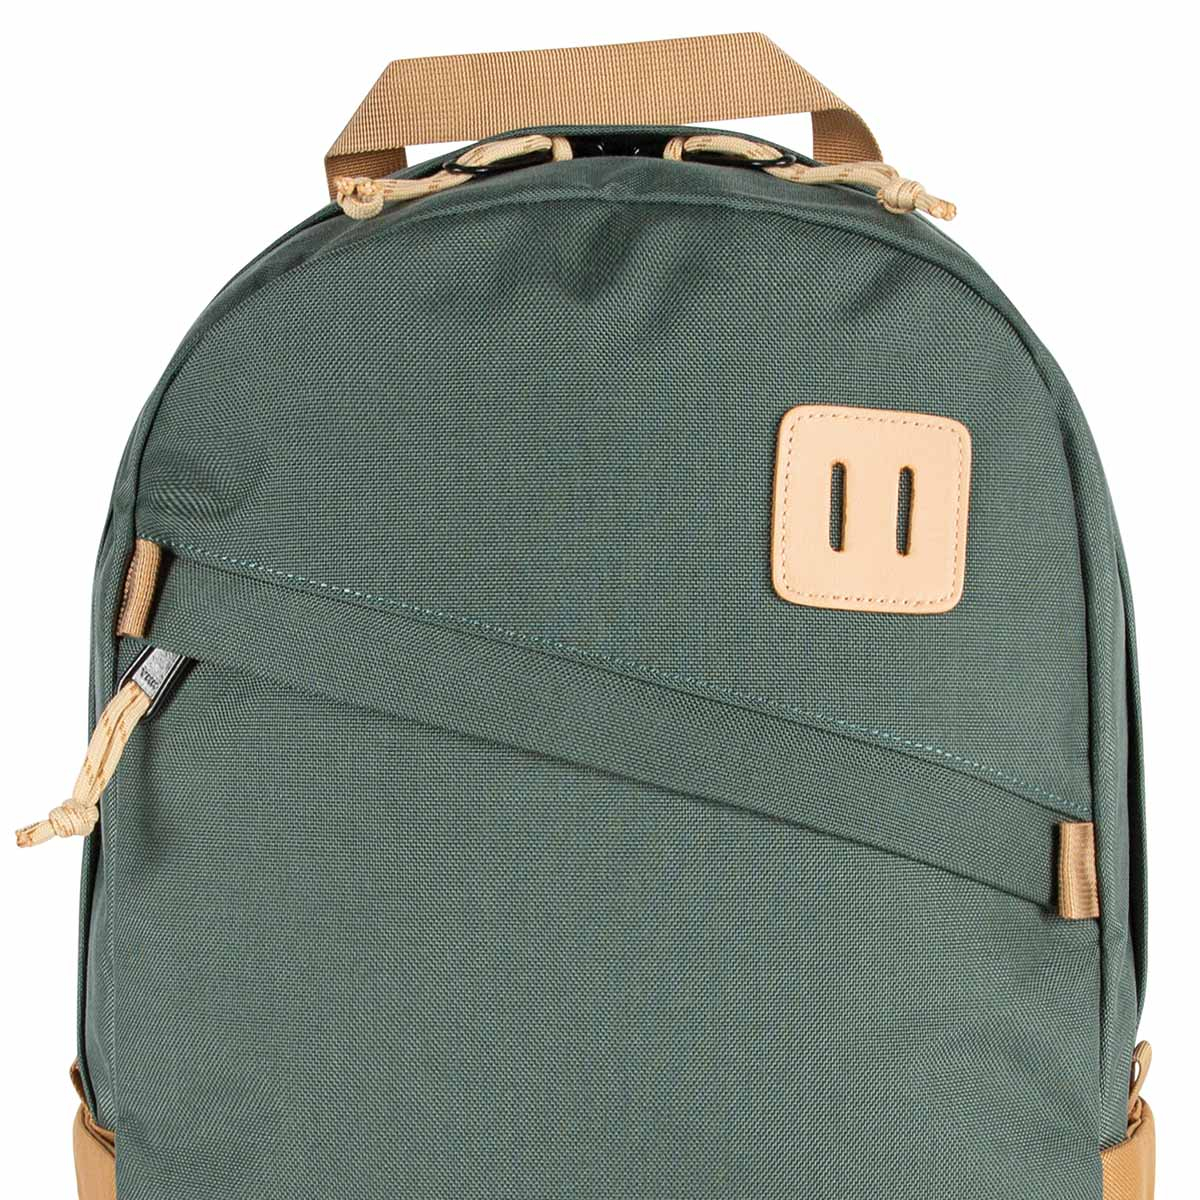 Topo Designs Daypack Classic Forest/Khaki, zeer sterke rugzak met klassieke uitstraling, uitermate geschikt voor dagelijks gebruik